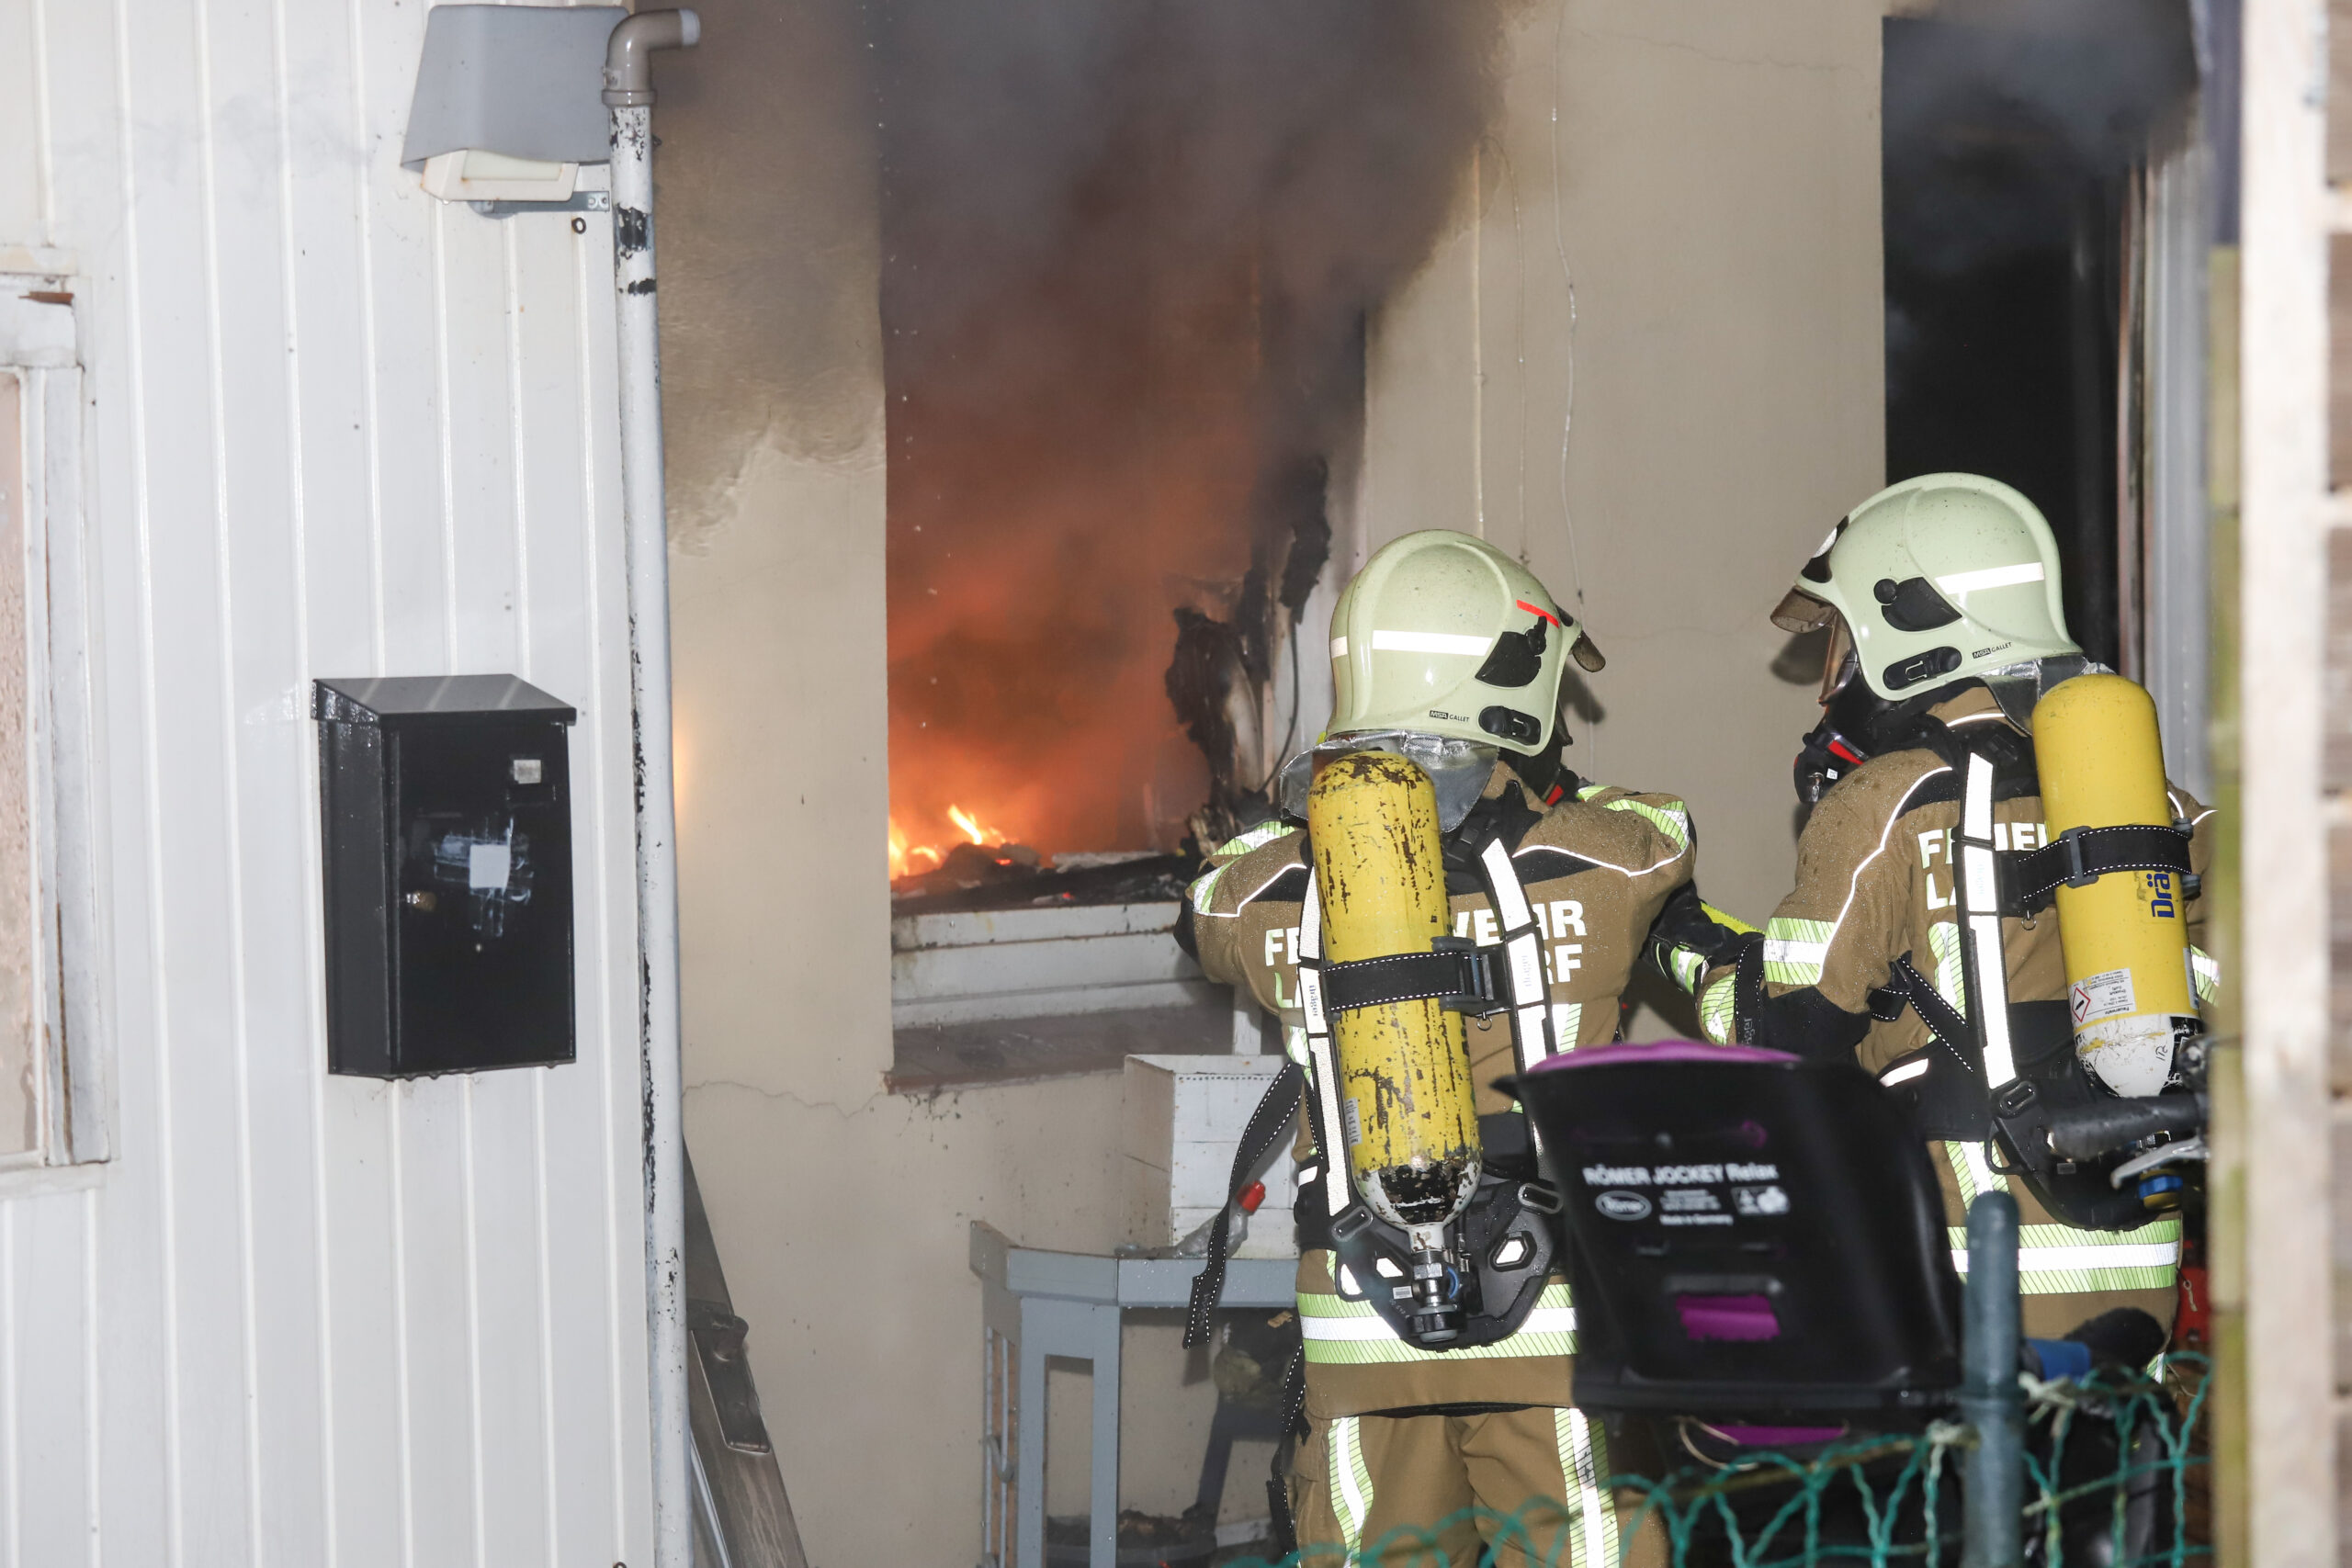 Wohnung in Lägerdorf in Flammen – 40 retter im Einsatz, ein Verlezter Bewohner in Klinik